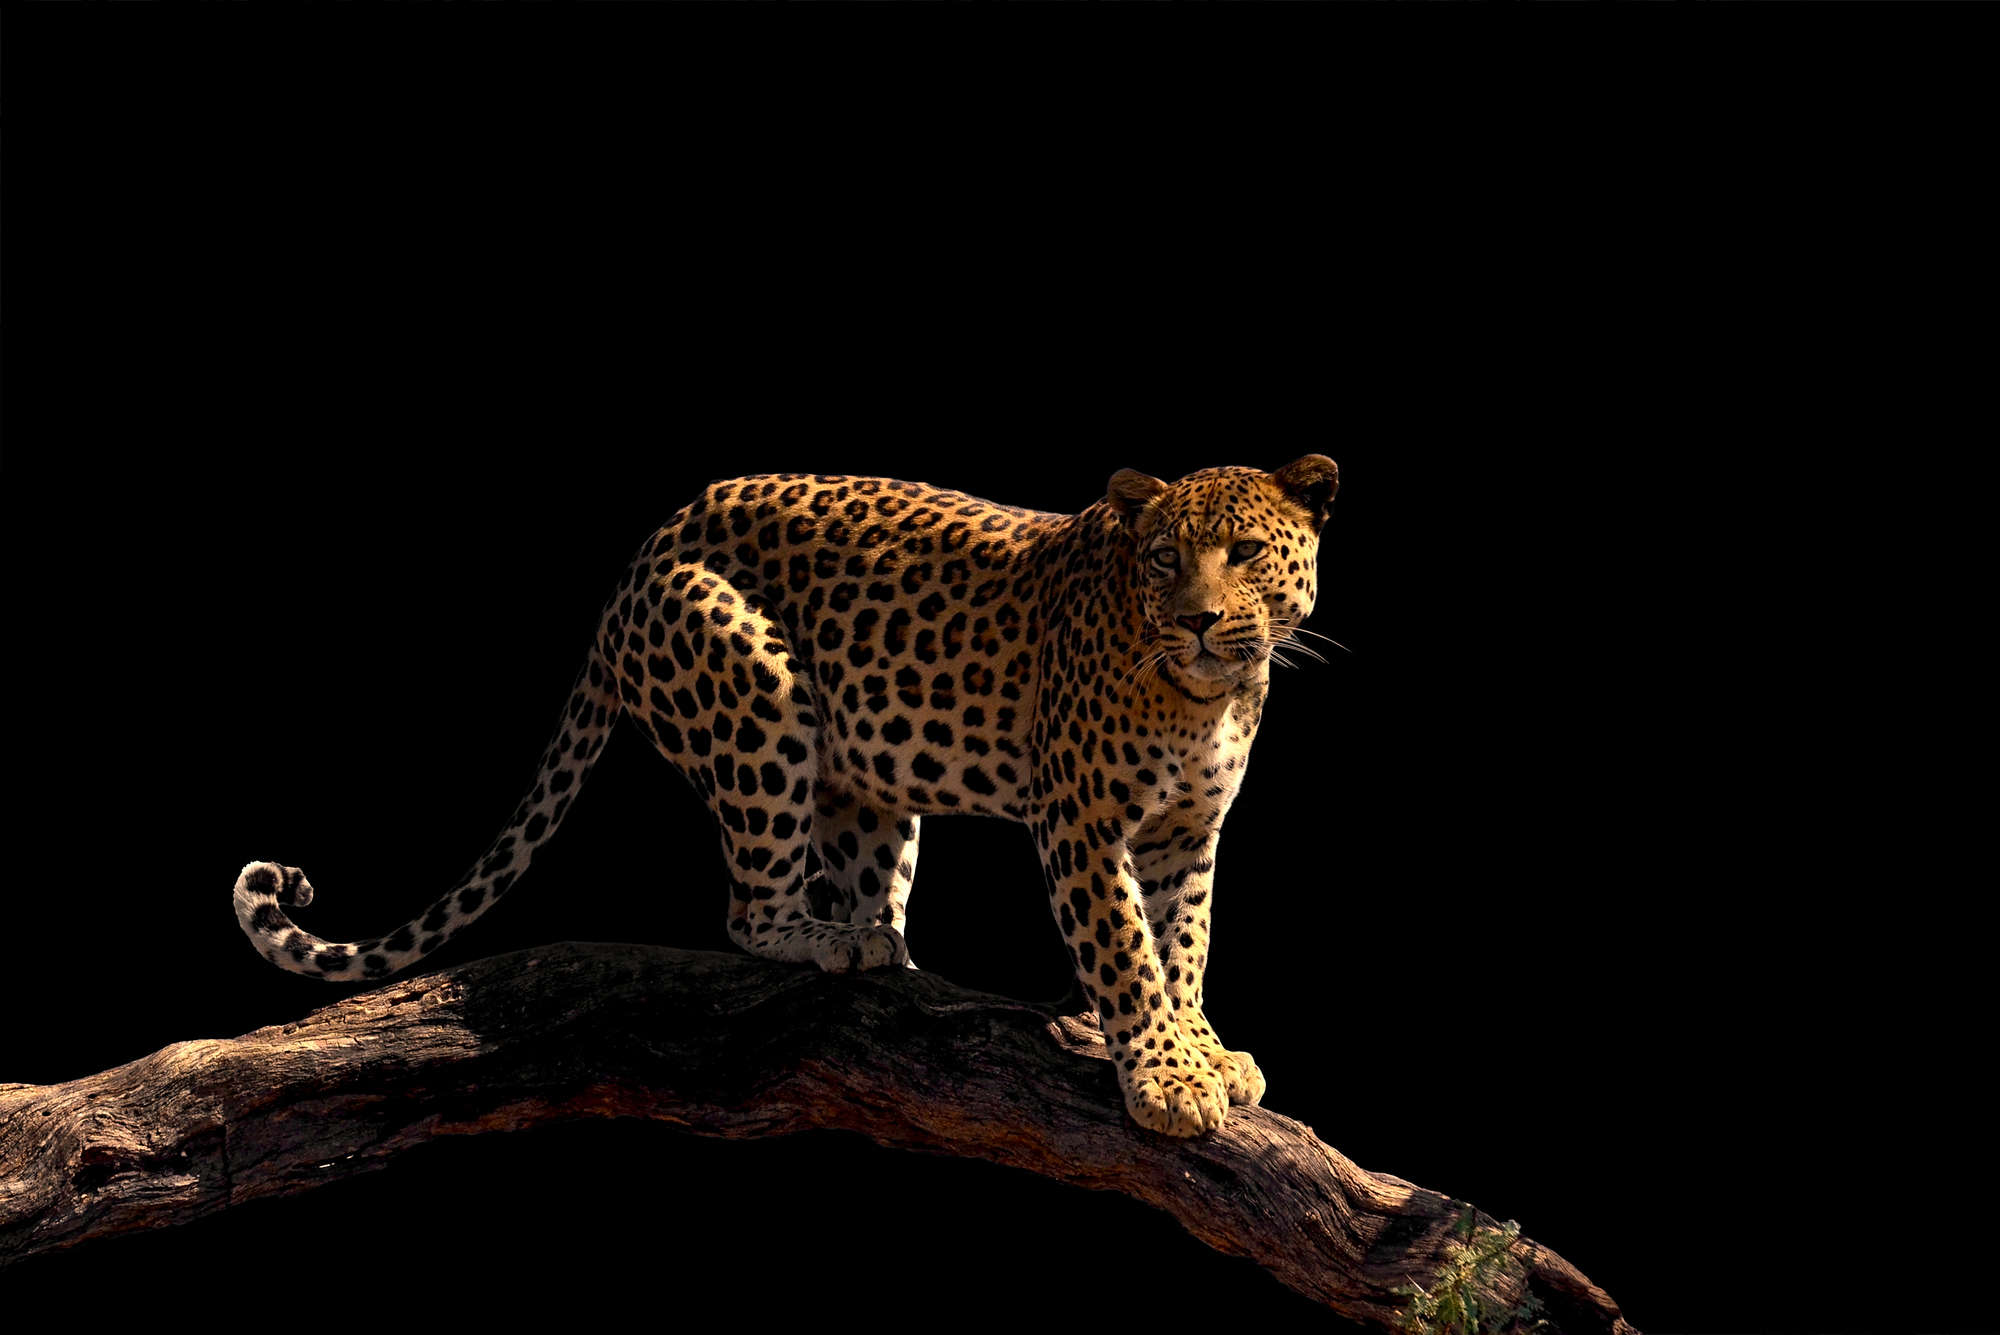             Leopard Fototapete auf einem Ast stehend auf Strukturvlies
        